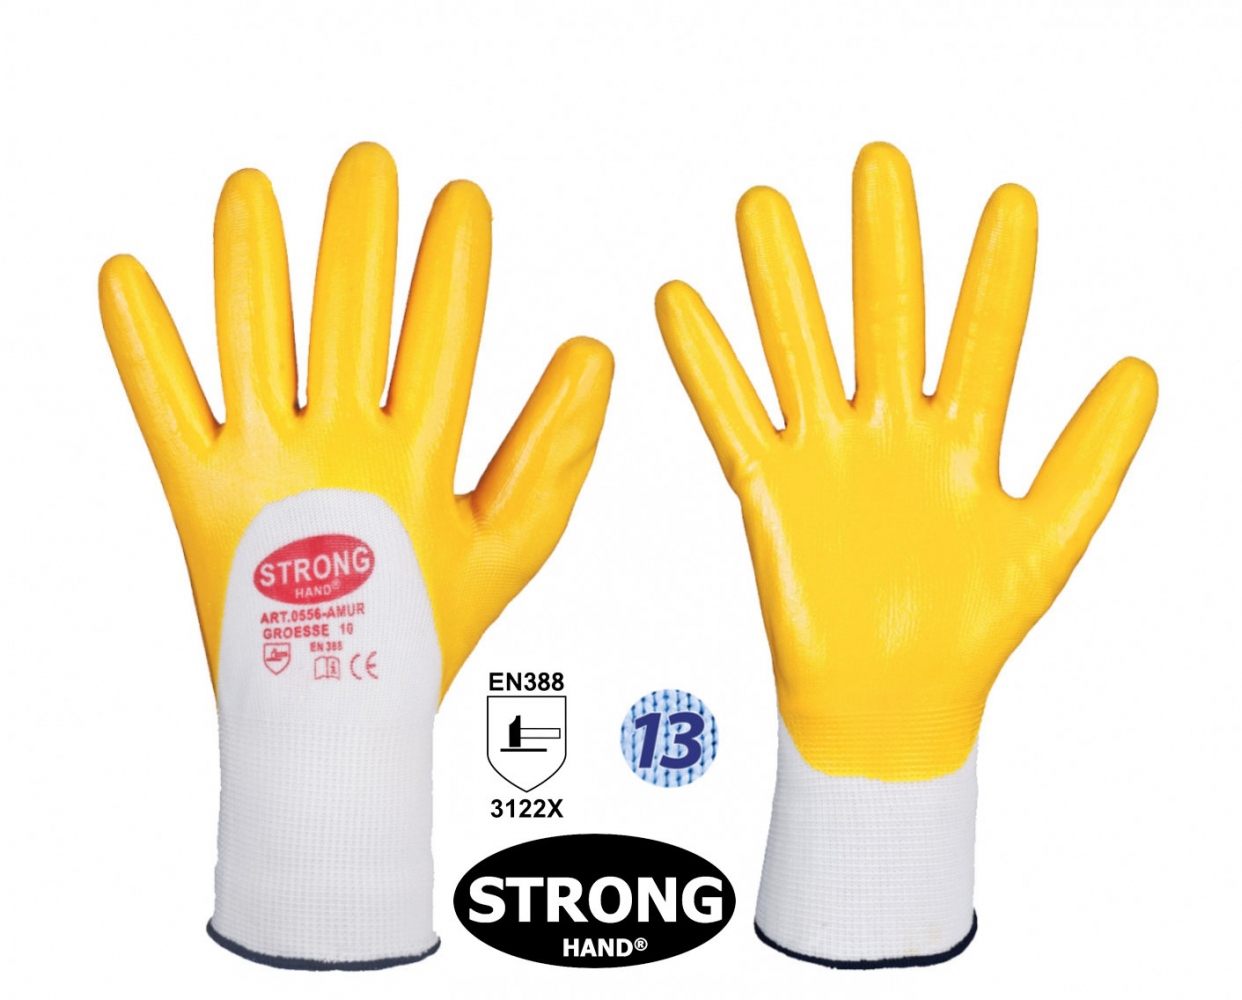 pics/Feldtmann 2016/Handschutz/stronghand-0556-amur-nitrile-coated-polyester-working-gloves2.jpg